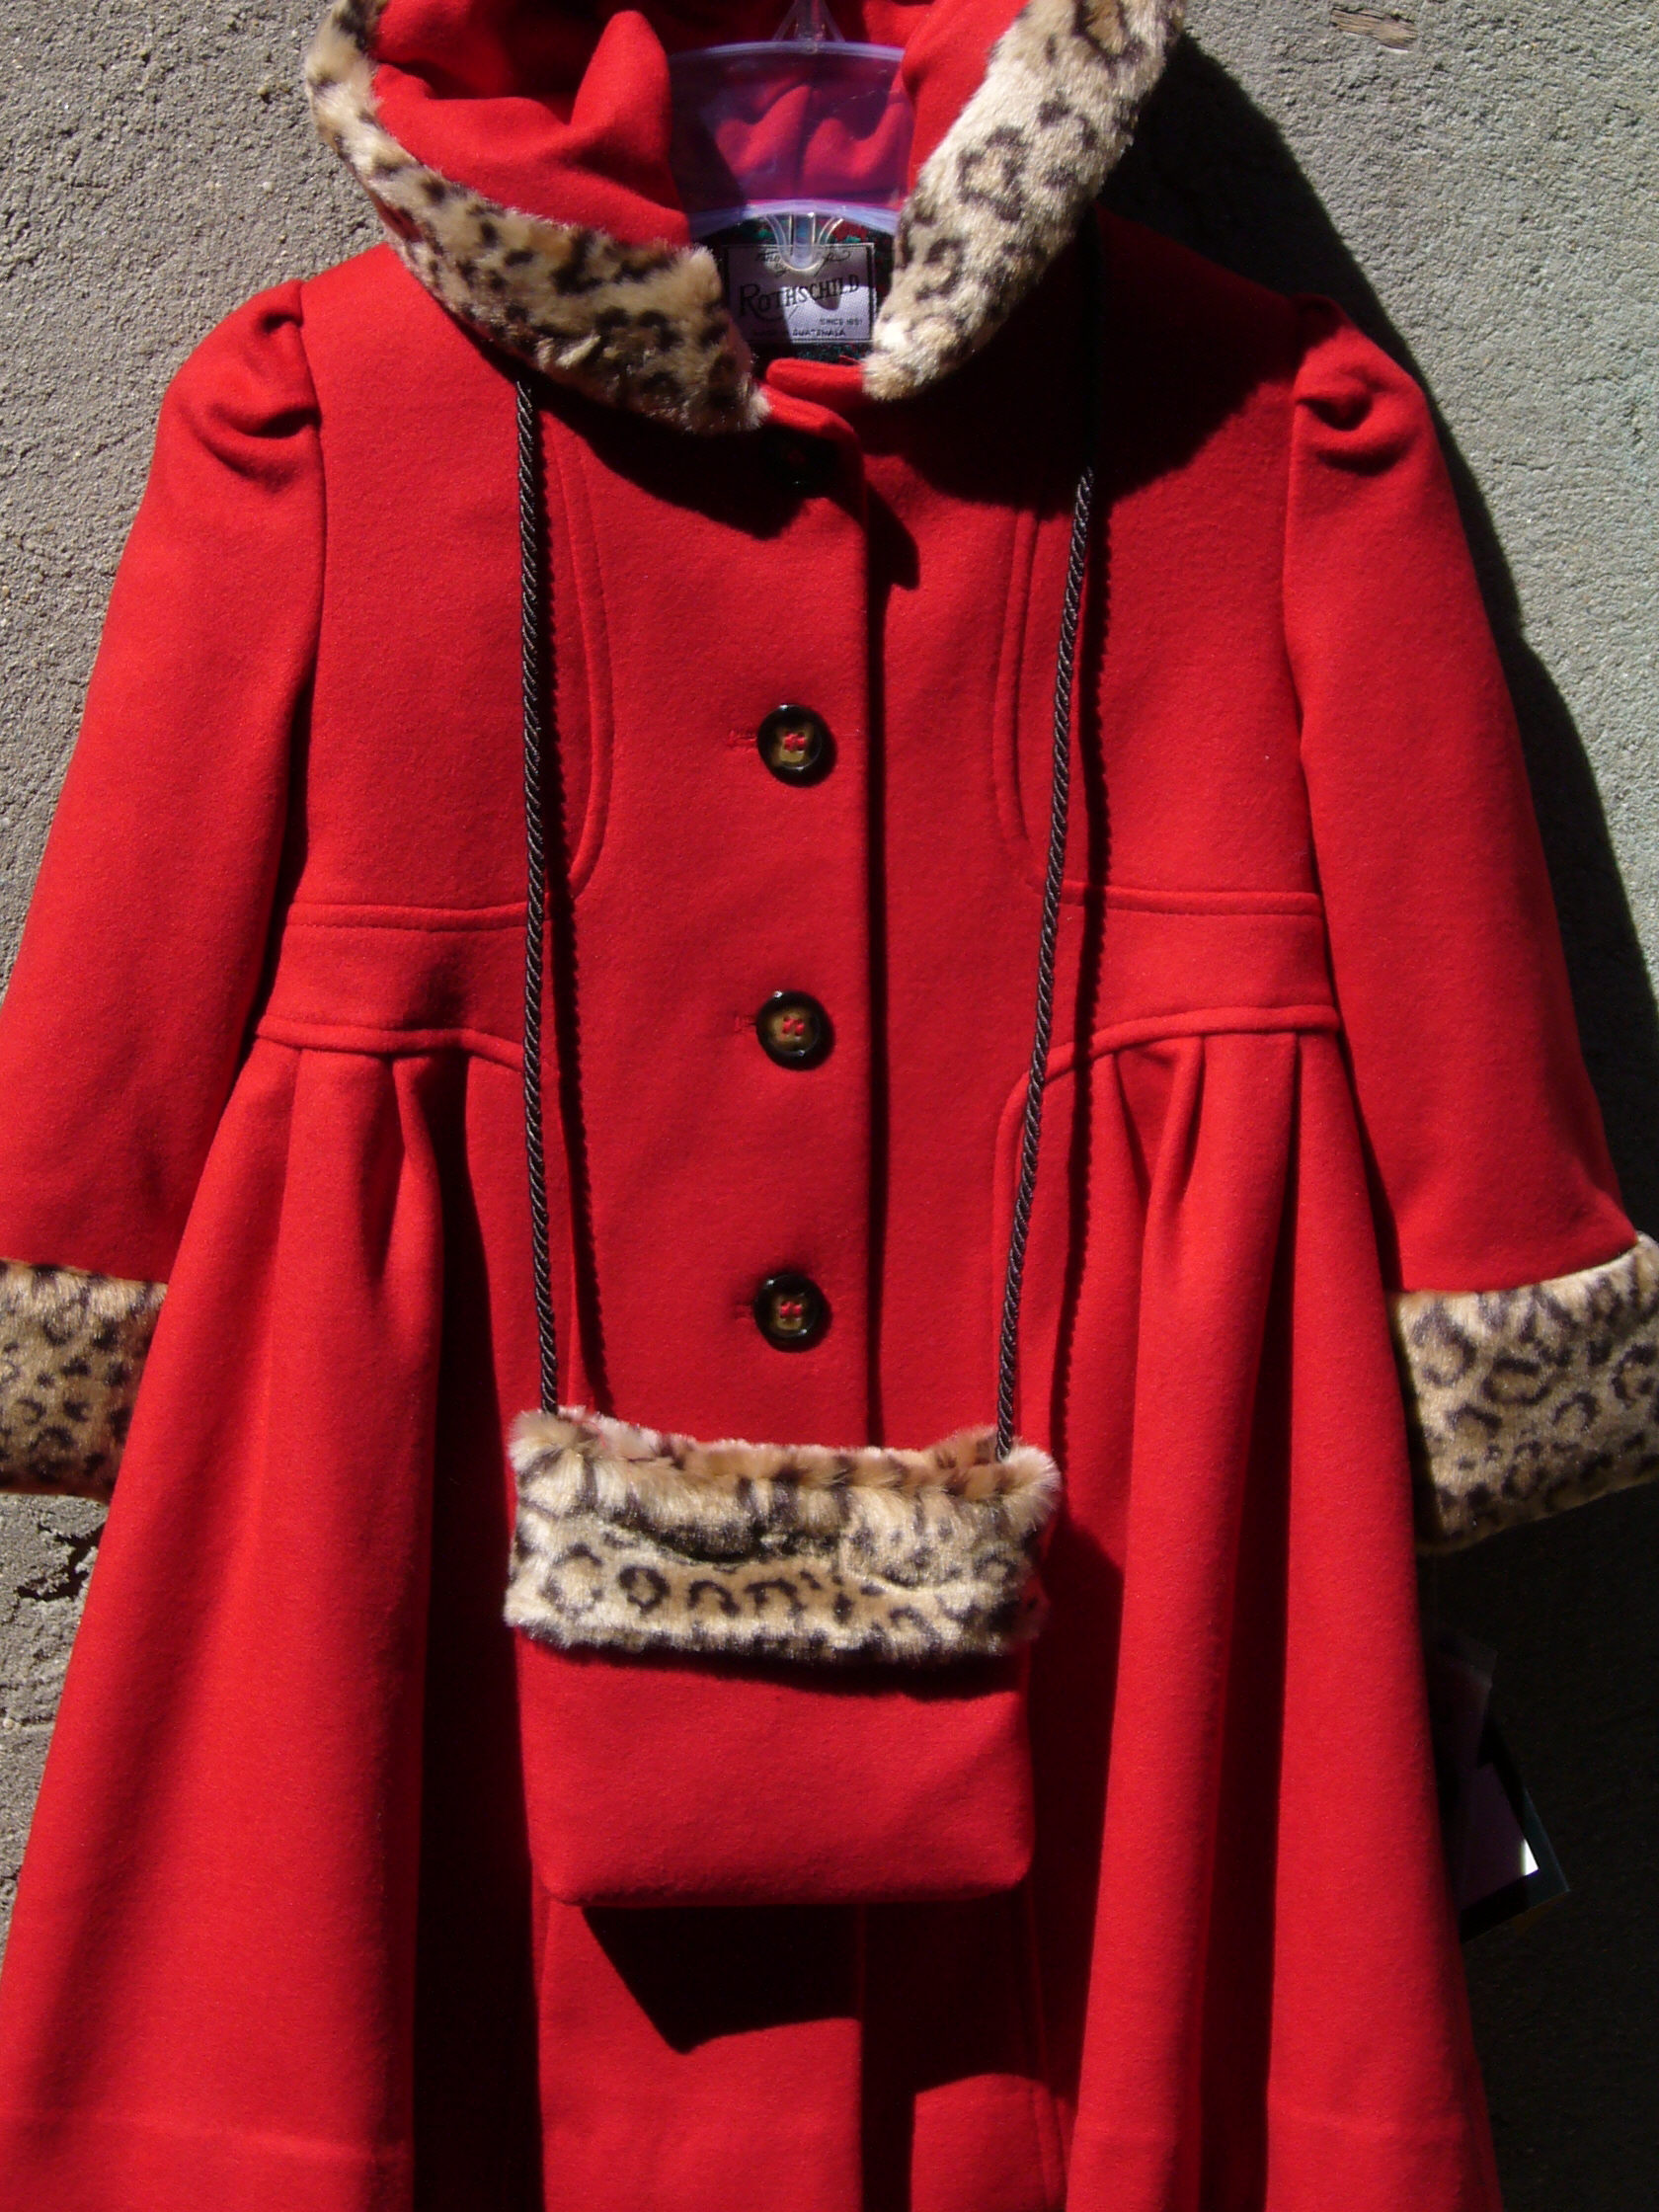 rothschild wool coat